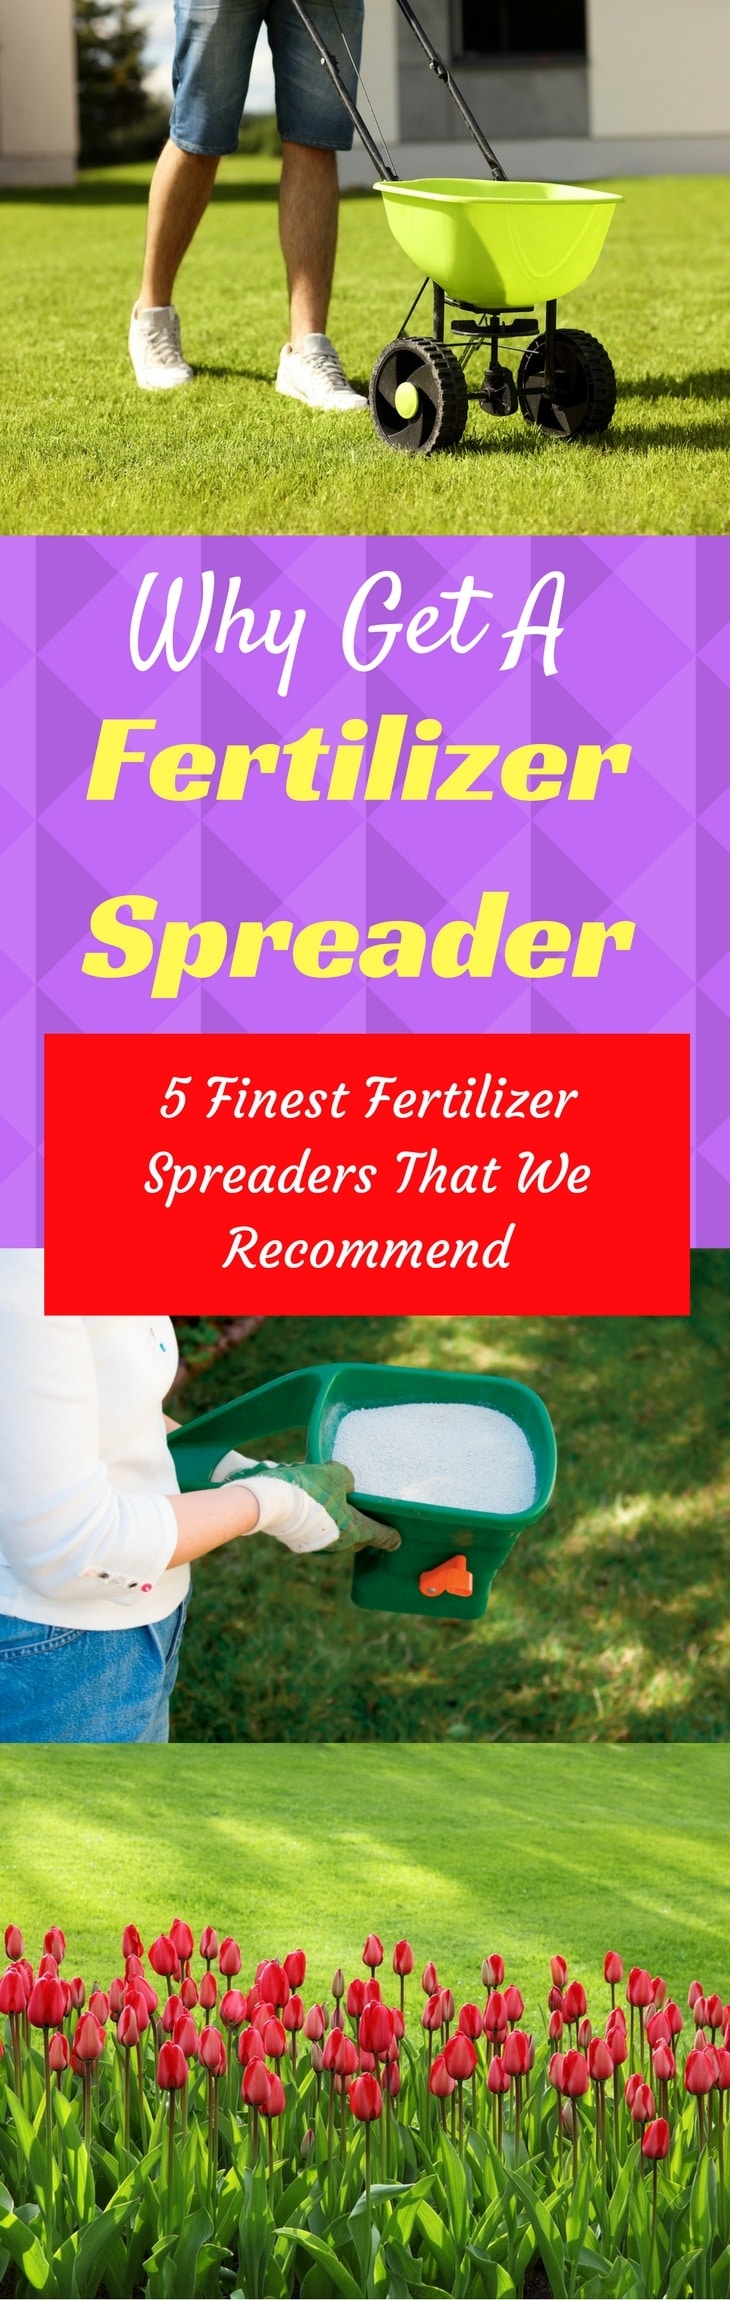 best fertilizer spreaders pin it-1